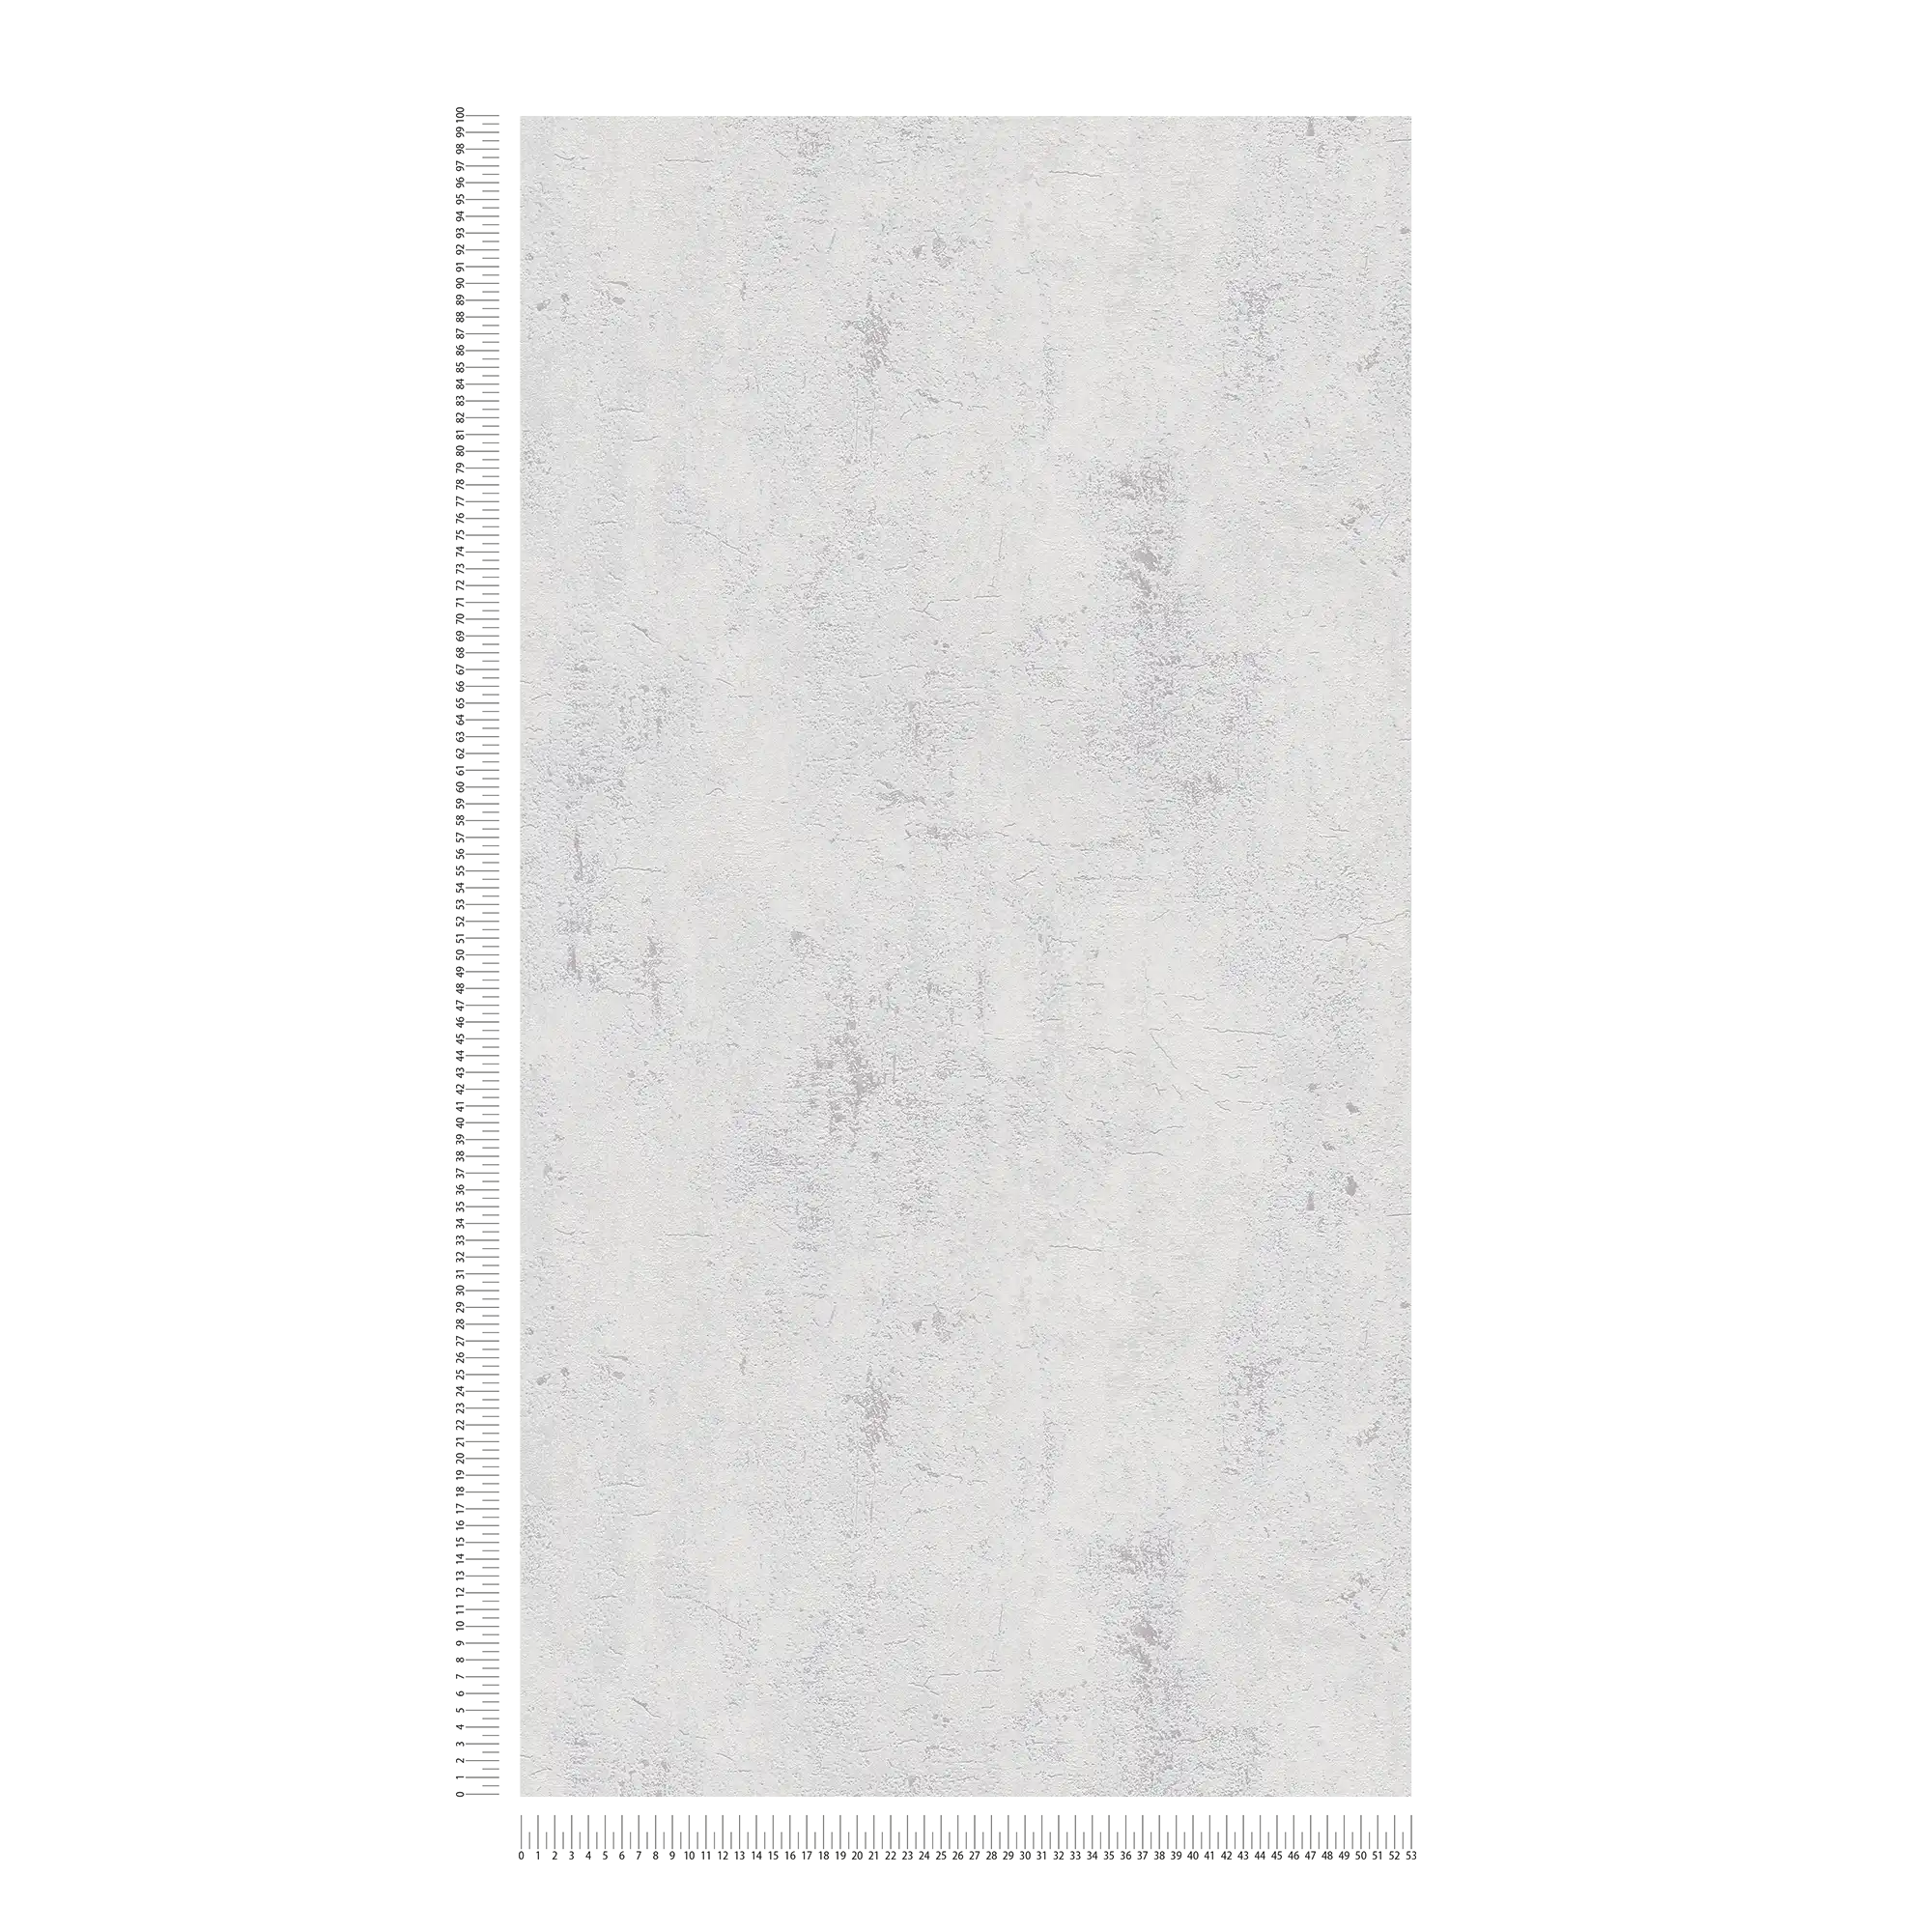             Carta da parati neutra con effetto intonaco in stile rustico - beige, bianco
        